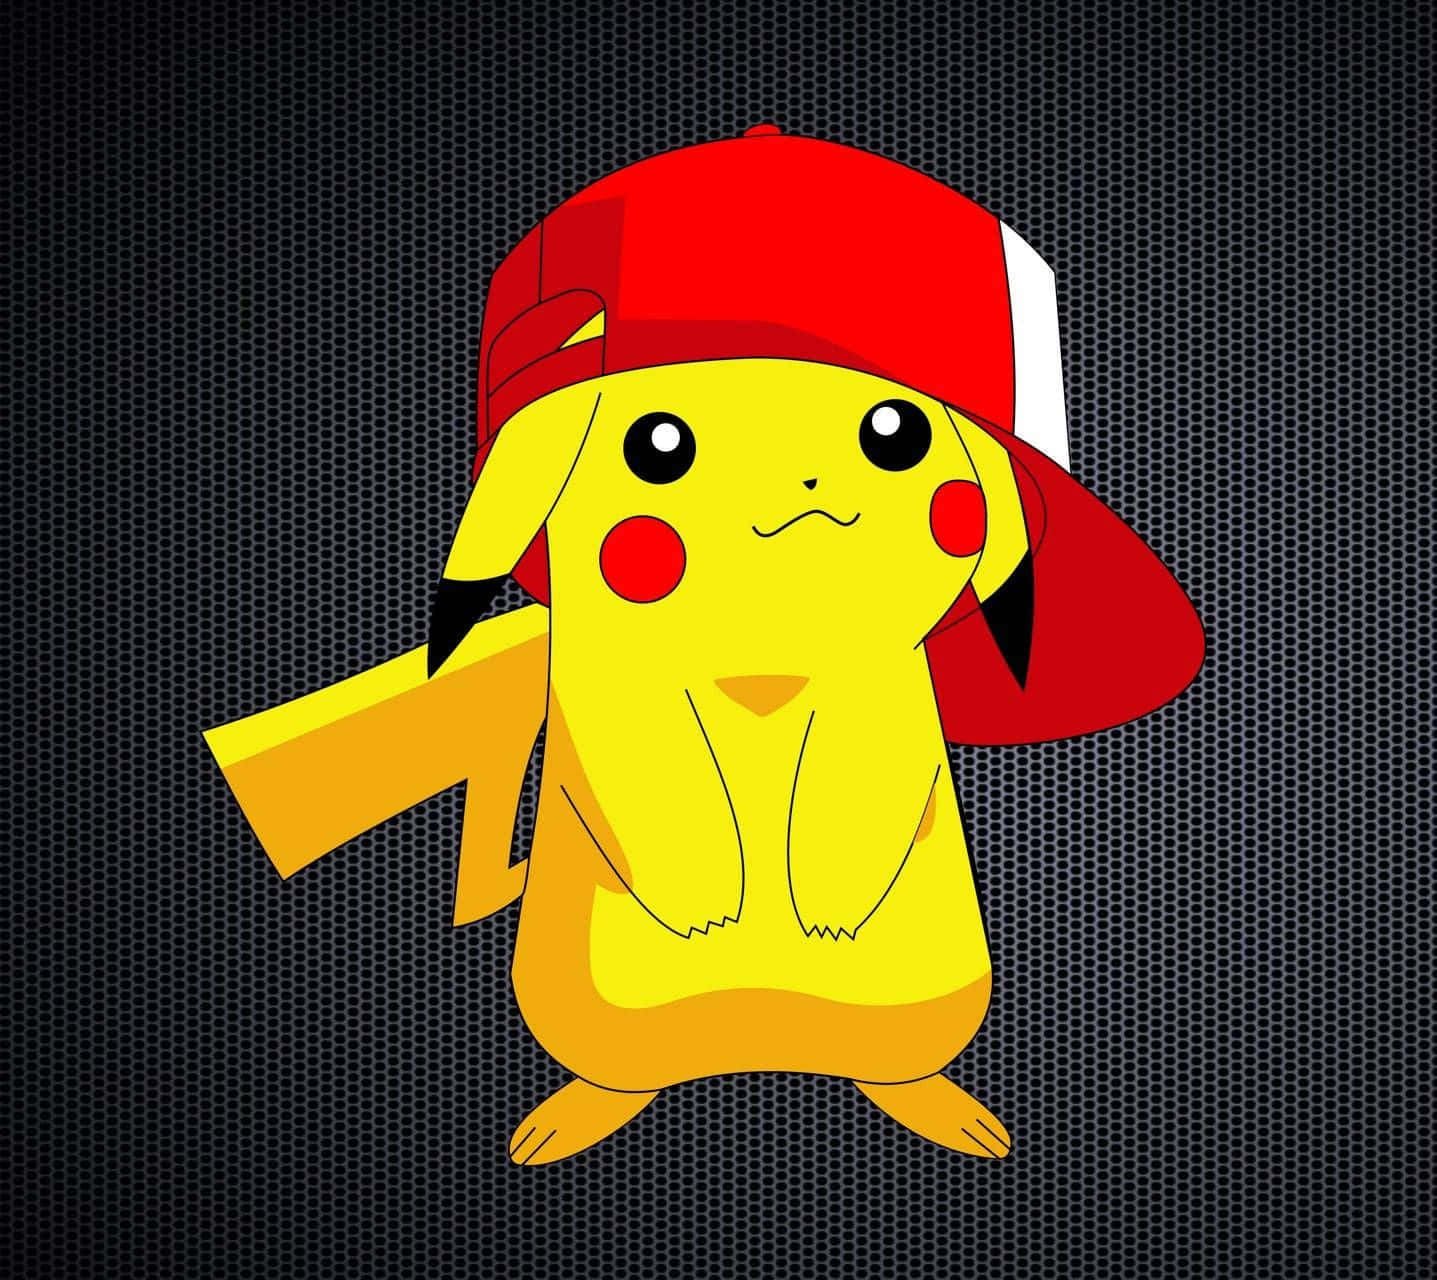 Pokemon Pikachu With Ash's Cap Wallpaper